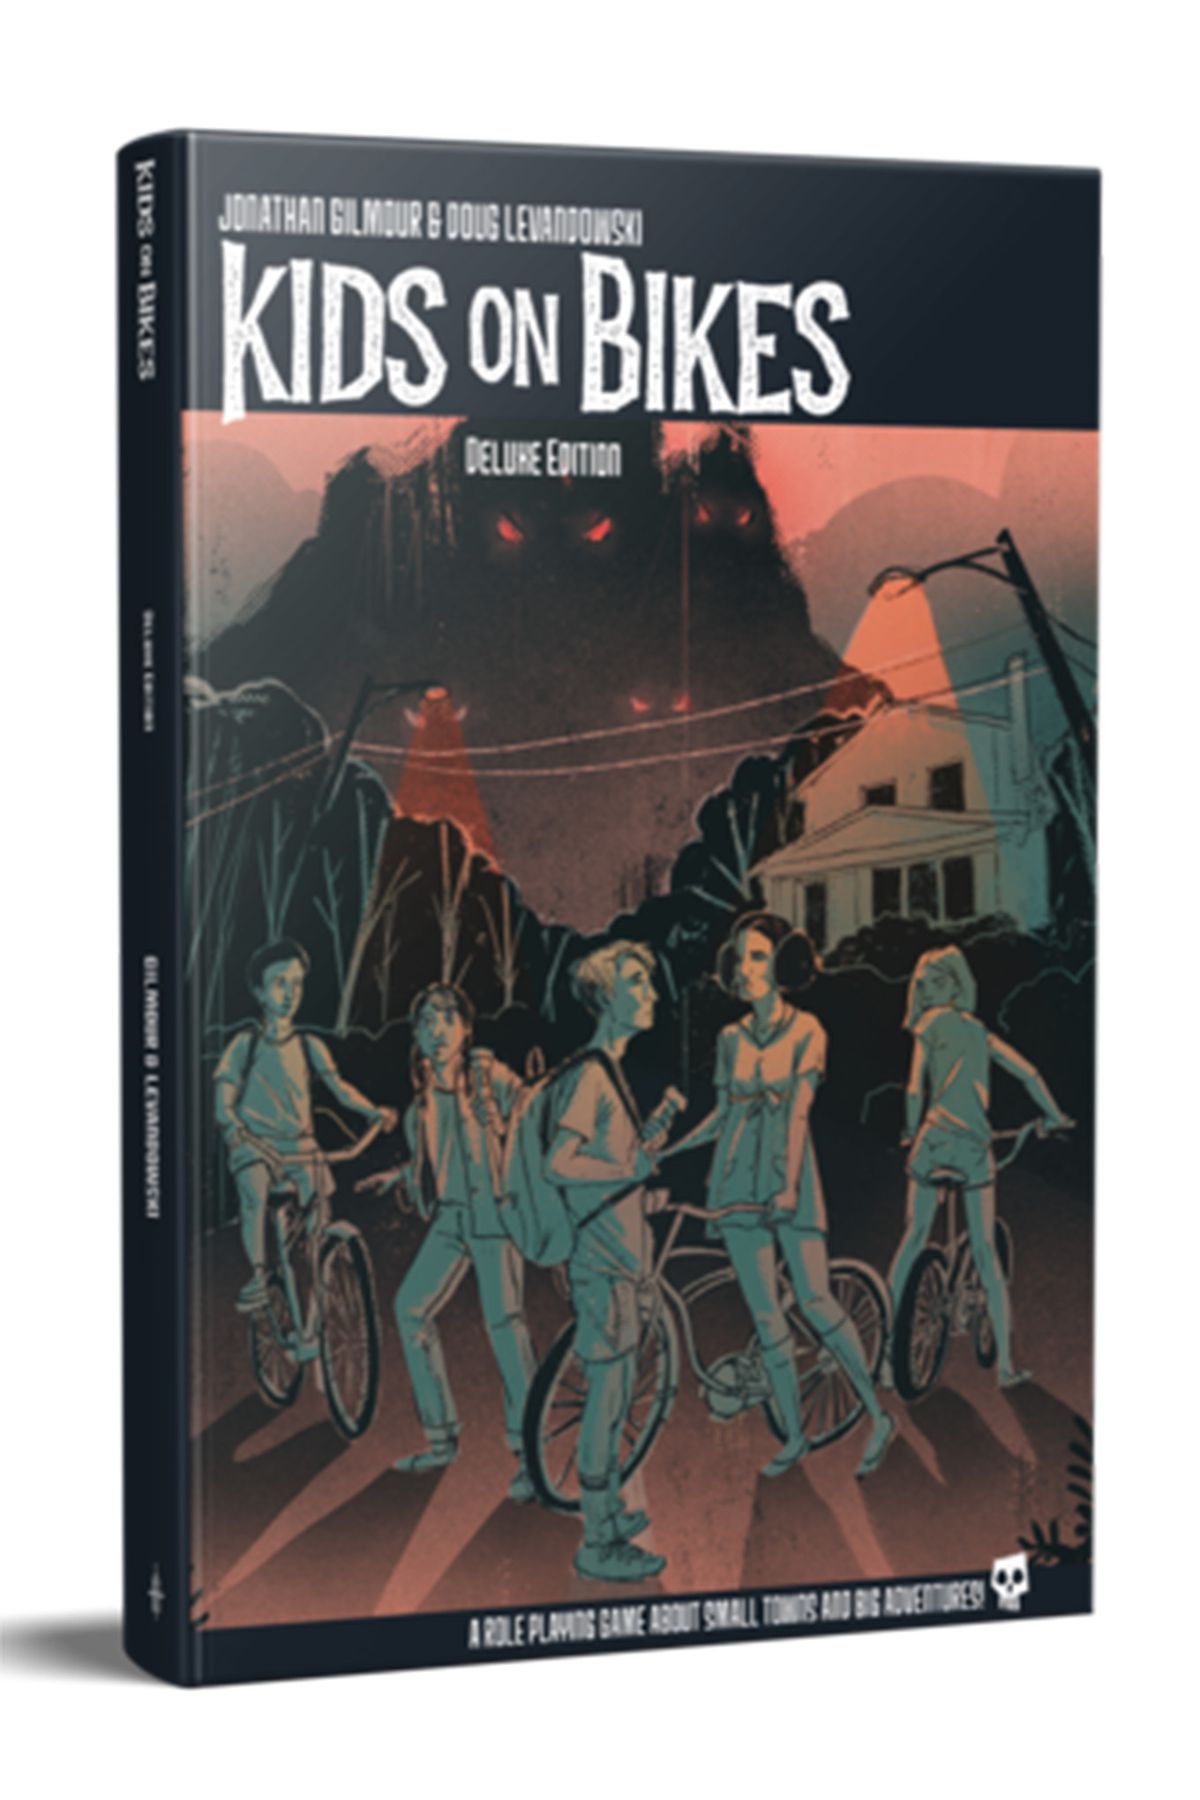 La pochette de Kids on Bikes montre des enfants sur leurs vélos en monotone avec des accents orange.